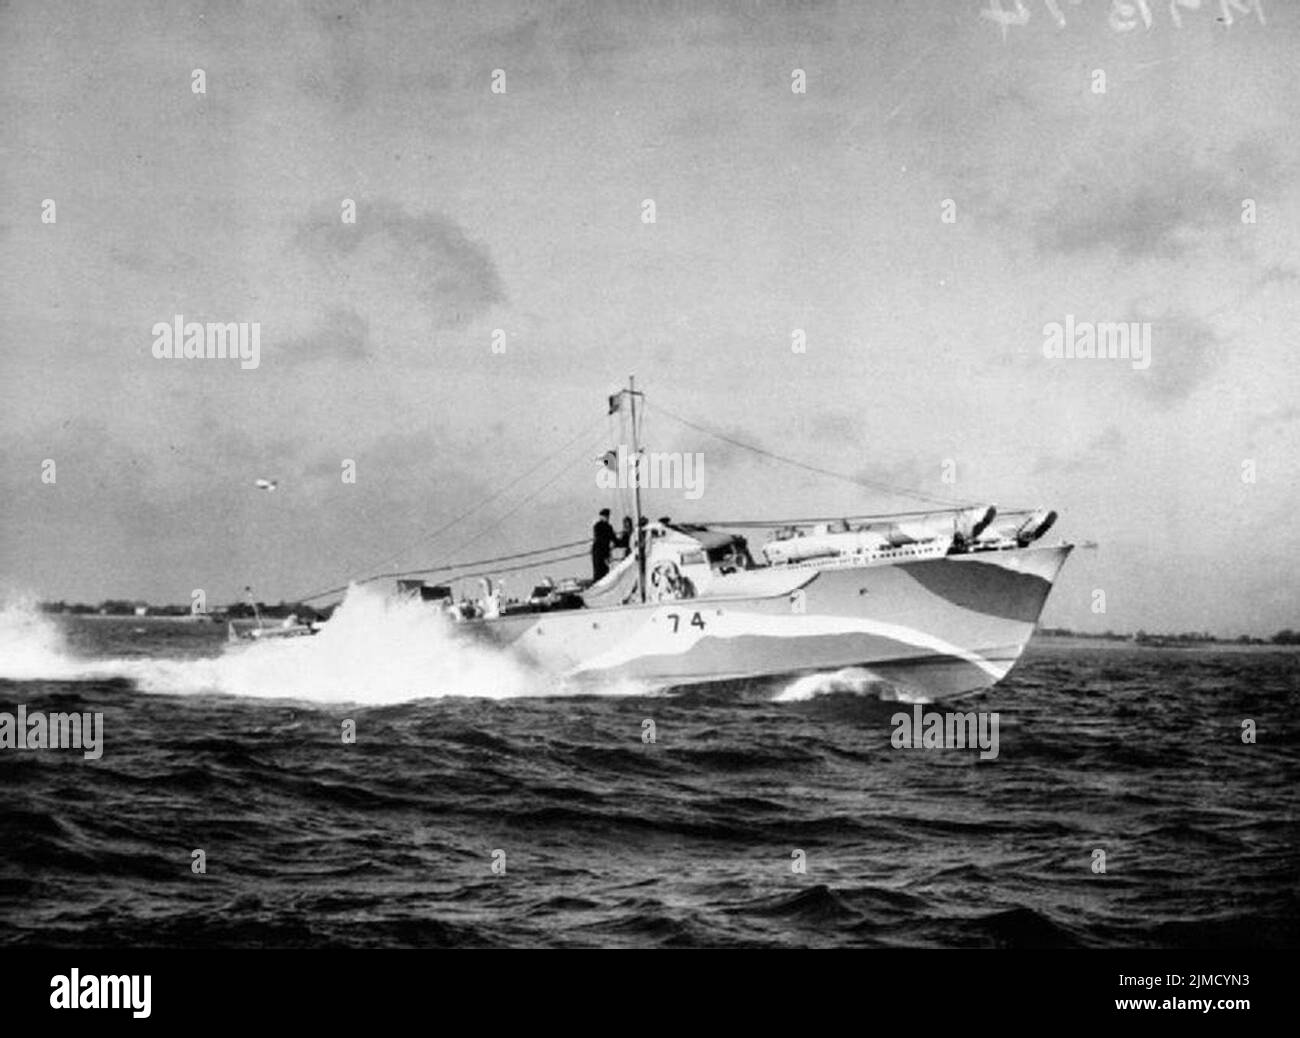 MTB 74 hatte ihre Torpedo-Rohre auf dem Vorschiff montiert, damit sie über Anti-Torpedo-Netze abgefeuert werden konnten. Dieses Motortorpedos wurde während des wagemutigen Razzia in St. Nazaire eingesetzt Stockfoto